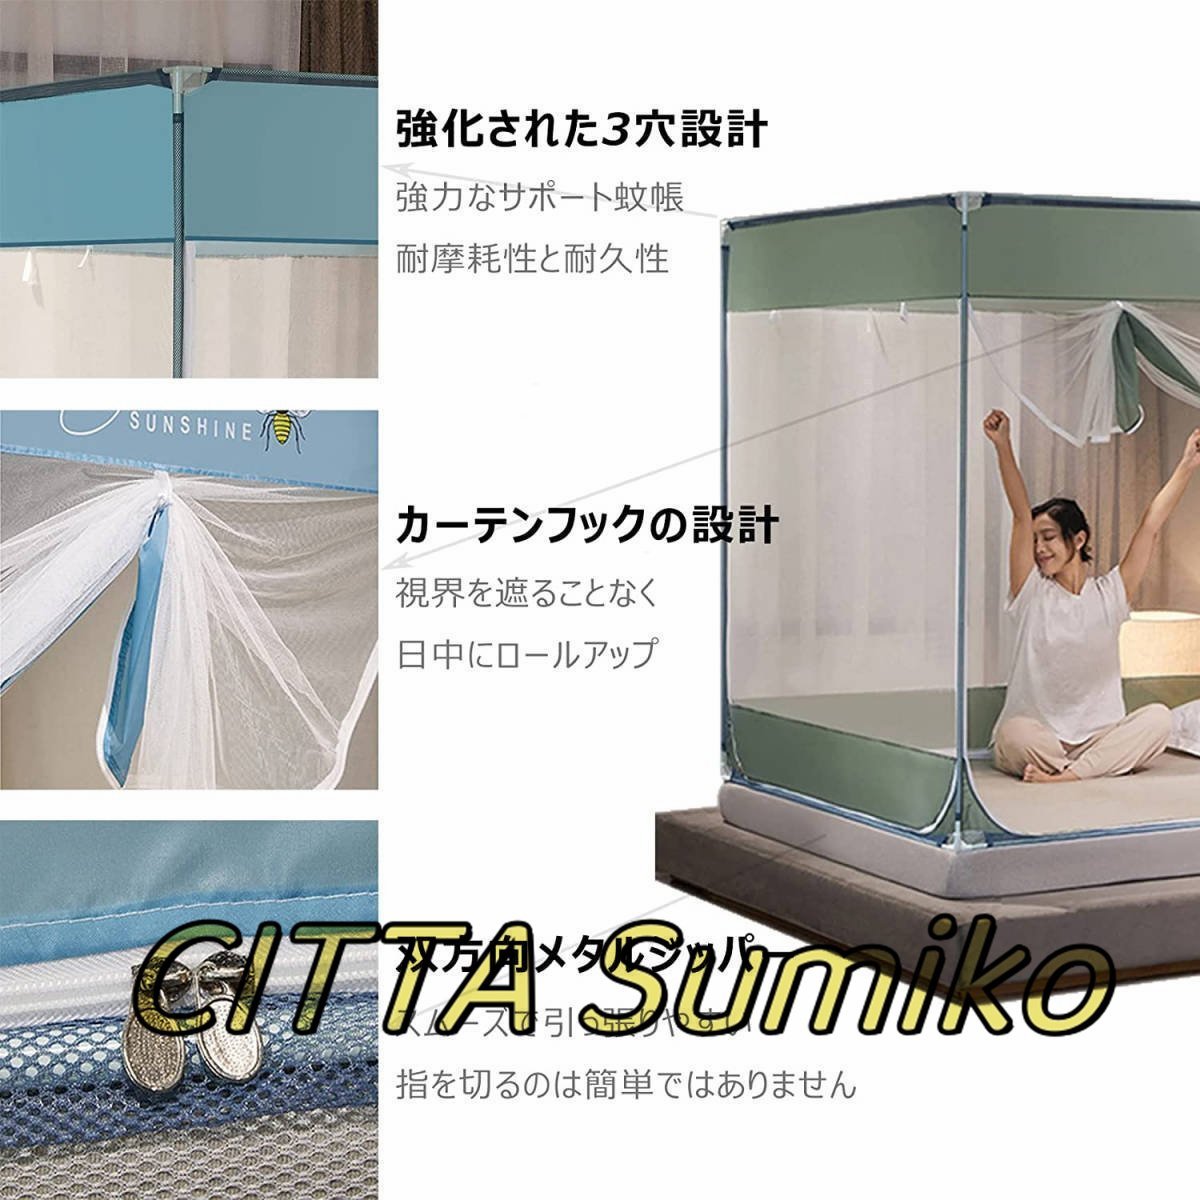 蚊帳 底付き シングルベッド用 ダブルベッド 3ドア設計 かや 密度が高い 蚊帳 ベッド用 畳 大型 キャンプ式 モスキートネット 虫/蚊よけ_画像5